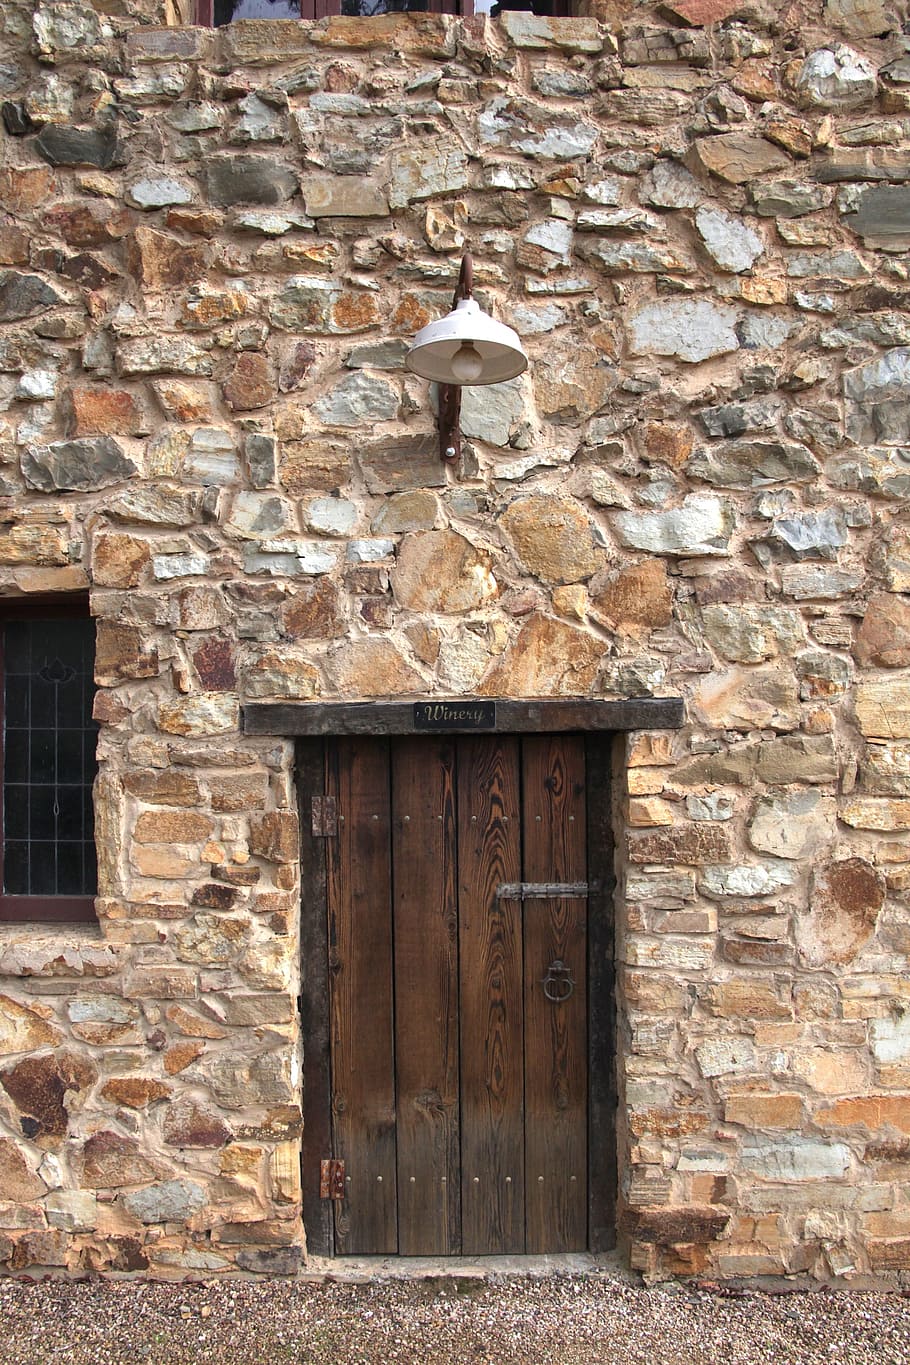 marrón, de madera, puerta de panel, puerta, madera, entrada, piedra, pared, rústico, rural